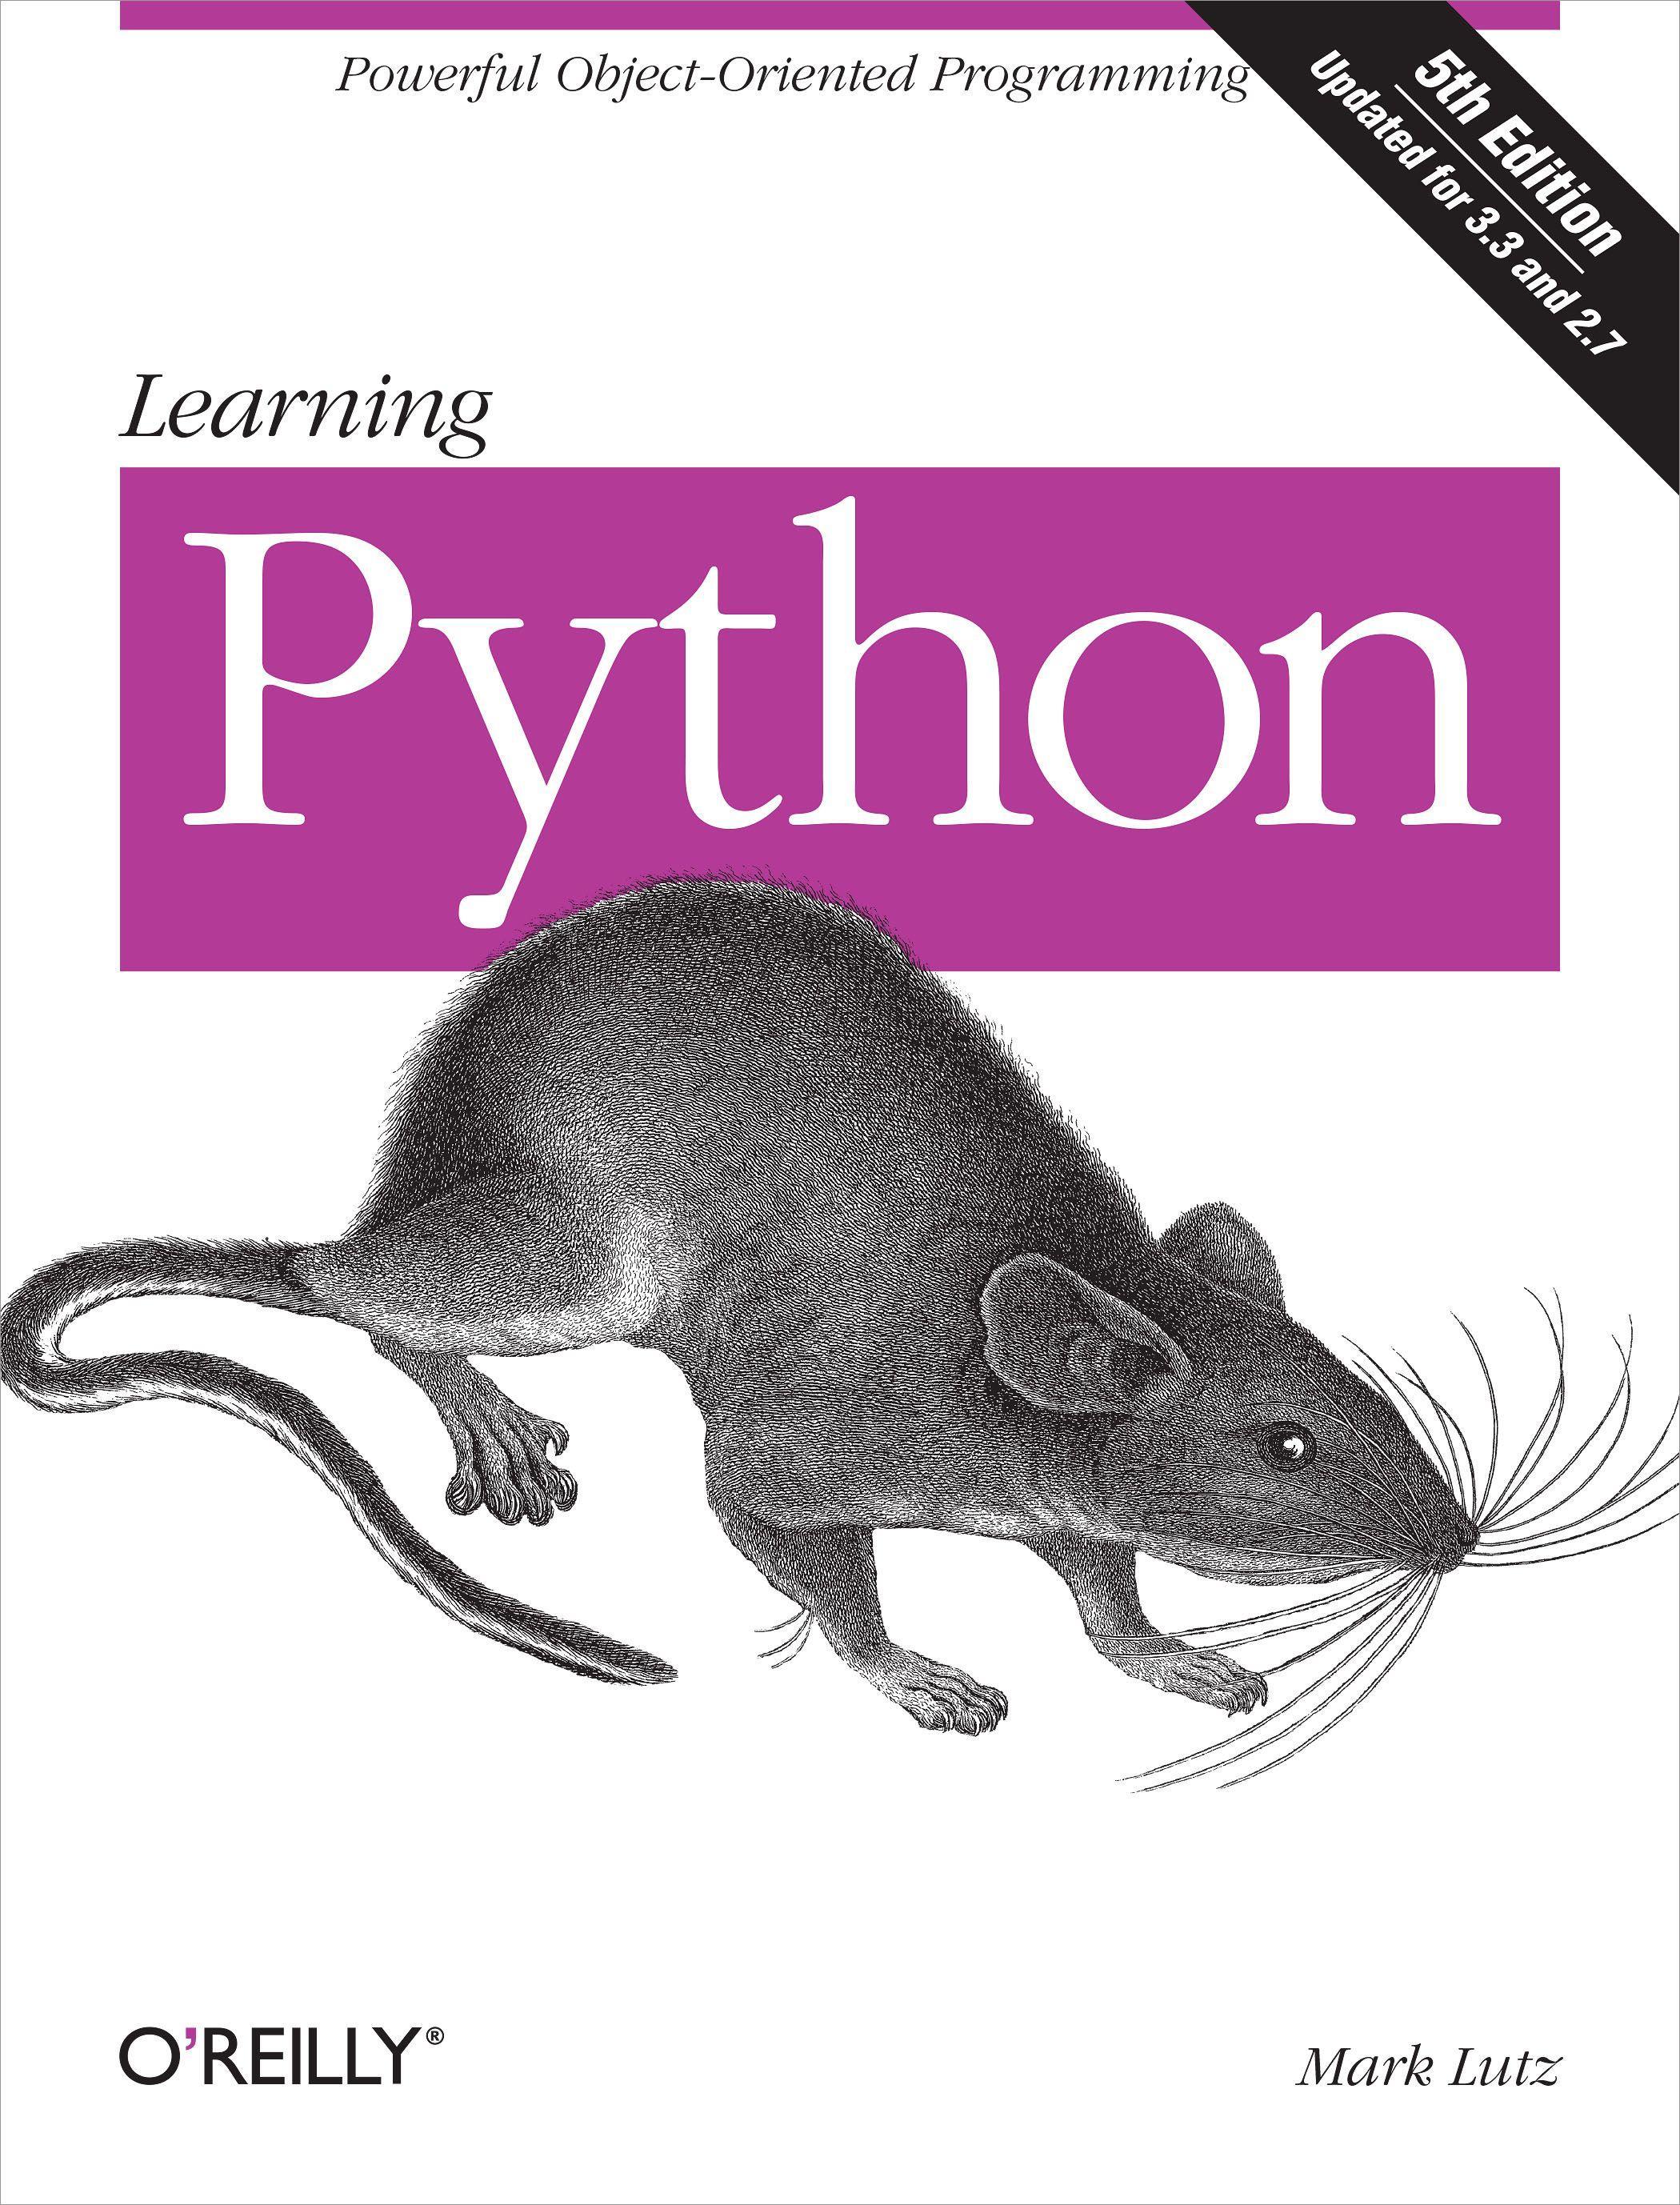 Learning Python | Mark Lutz | Taschenbuch | XLIX | Englisch | 2013 | O'Reilly Media | EAN 9781449355739 - Lutz, Mark